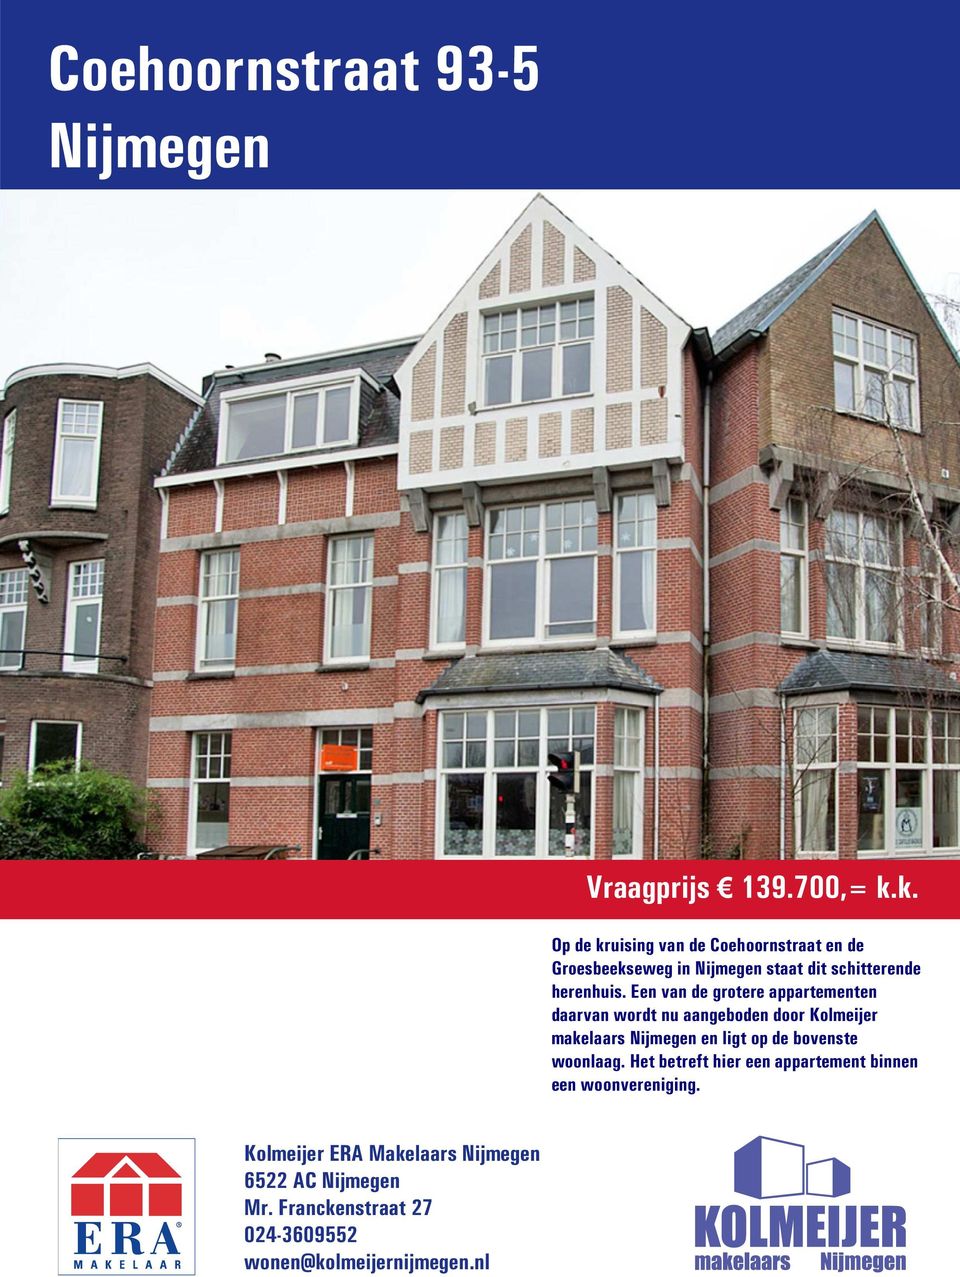 Een van de grotere appartementen daarvan wordt nu aangeboden door Kolmeijer makelaars Nijmegen en ligt op de